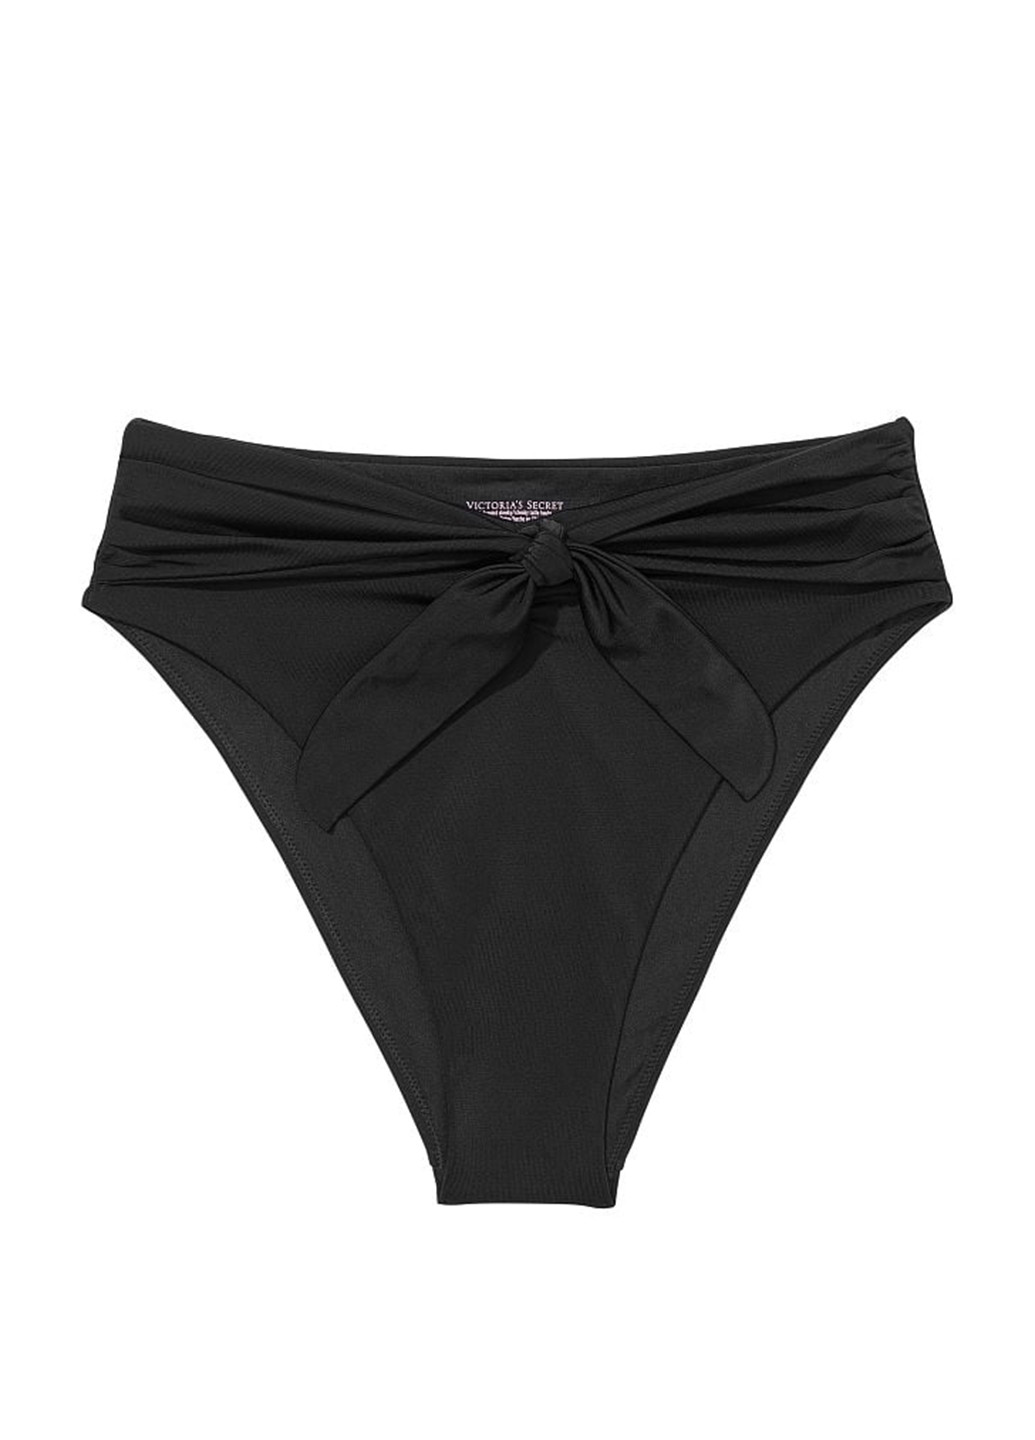 Черный летний купальник (лиф, трусы) раздельный, бикини Victoria's Secret